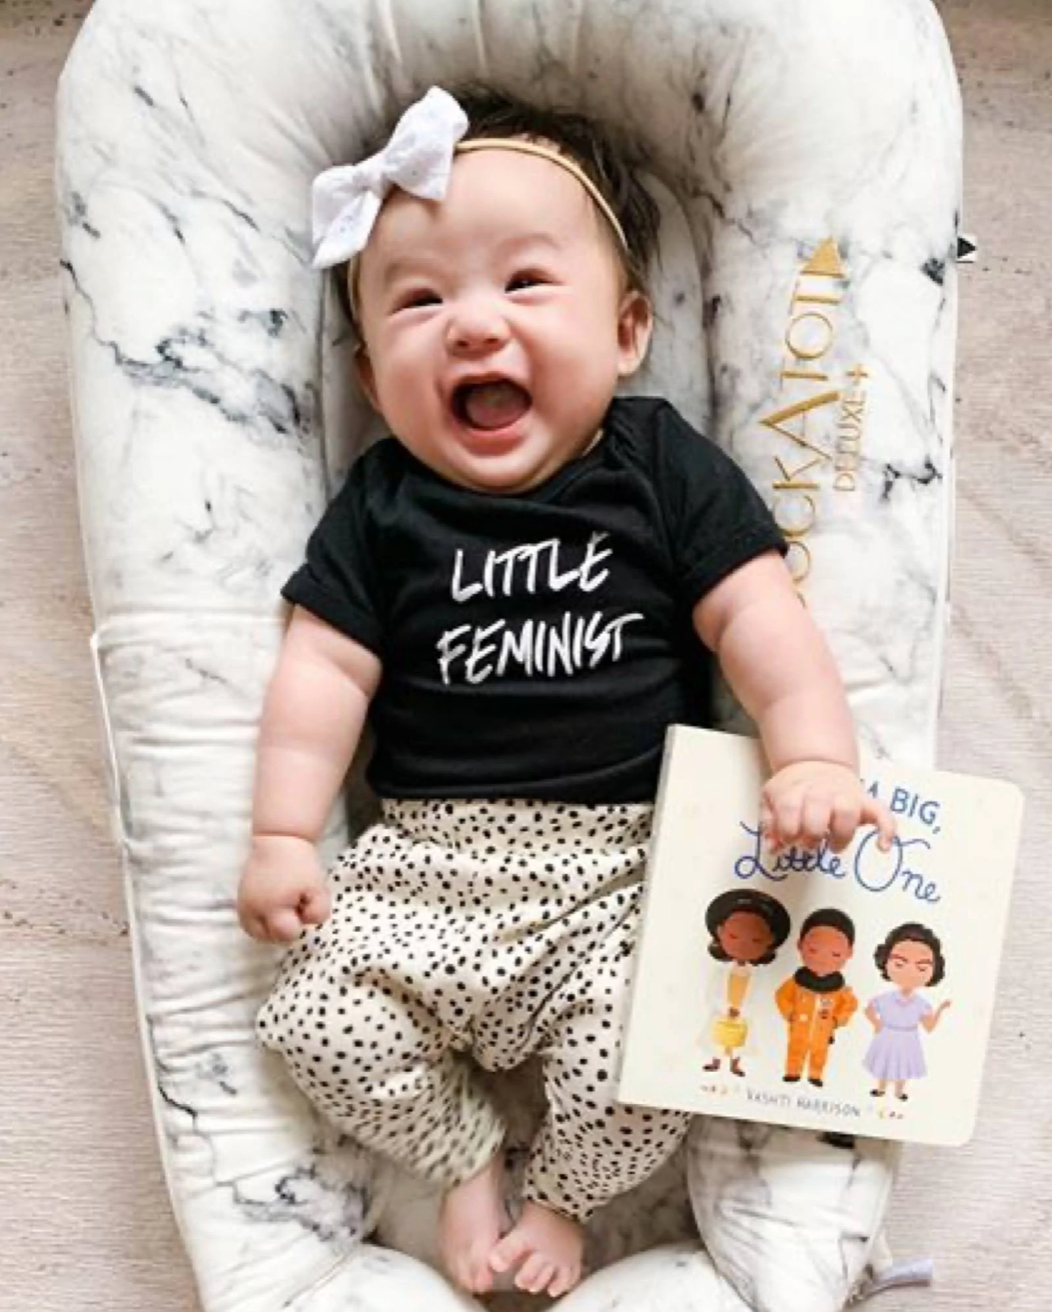 Little Feminist Short Sleeve Black Baby Bodysuit - Twinkle Twinkle Little One